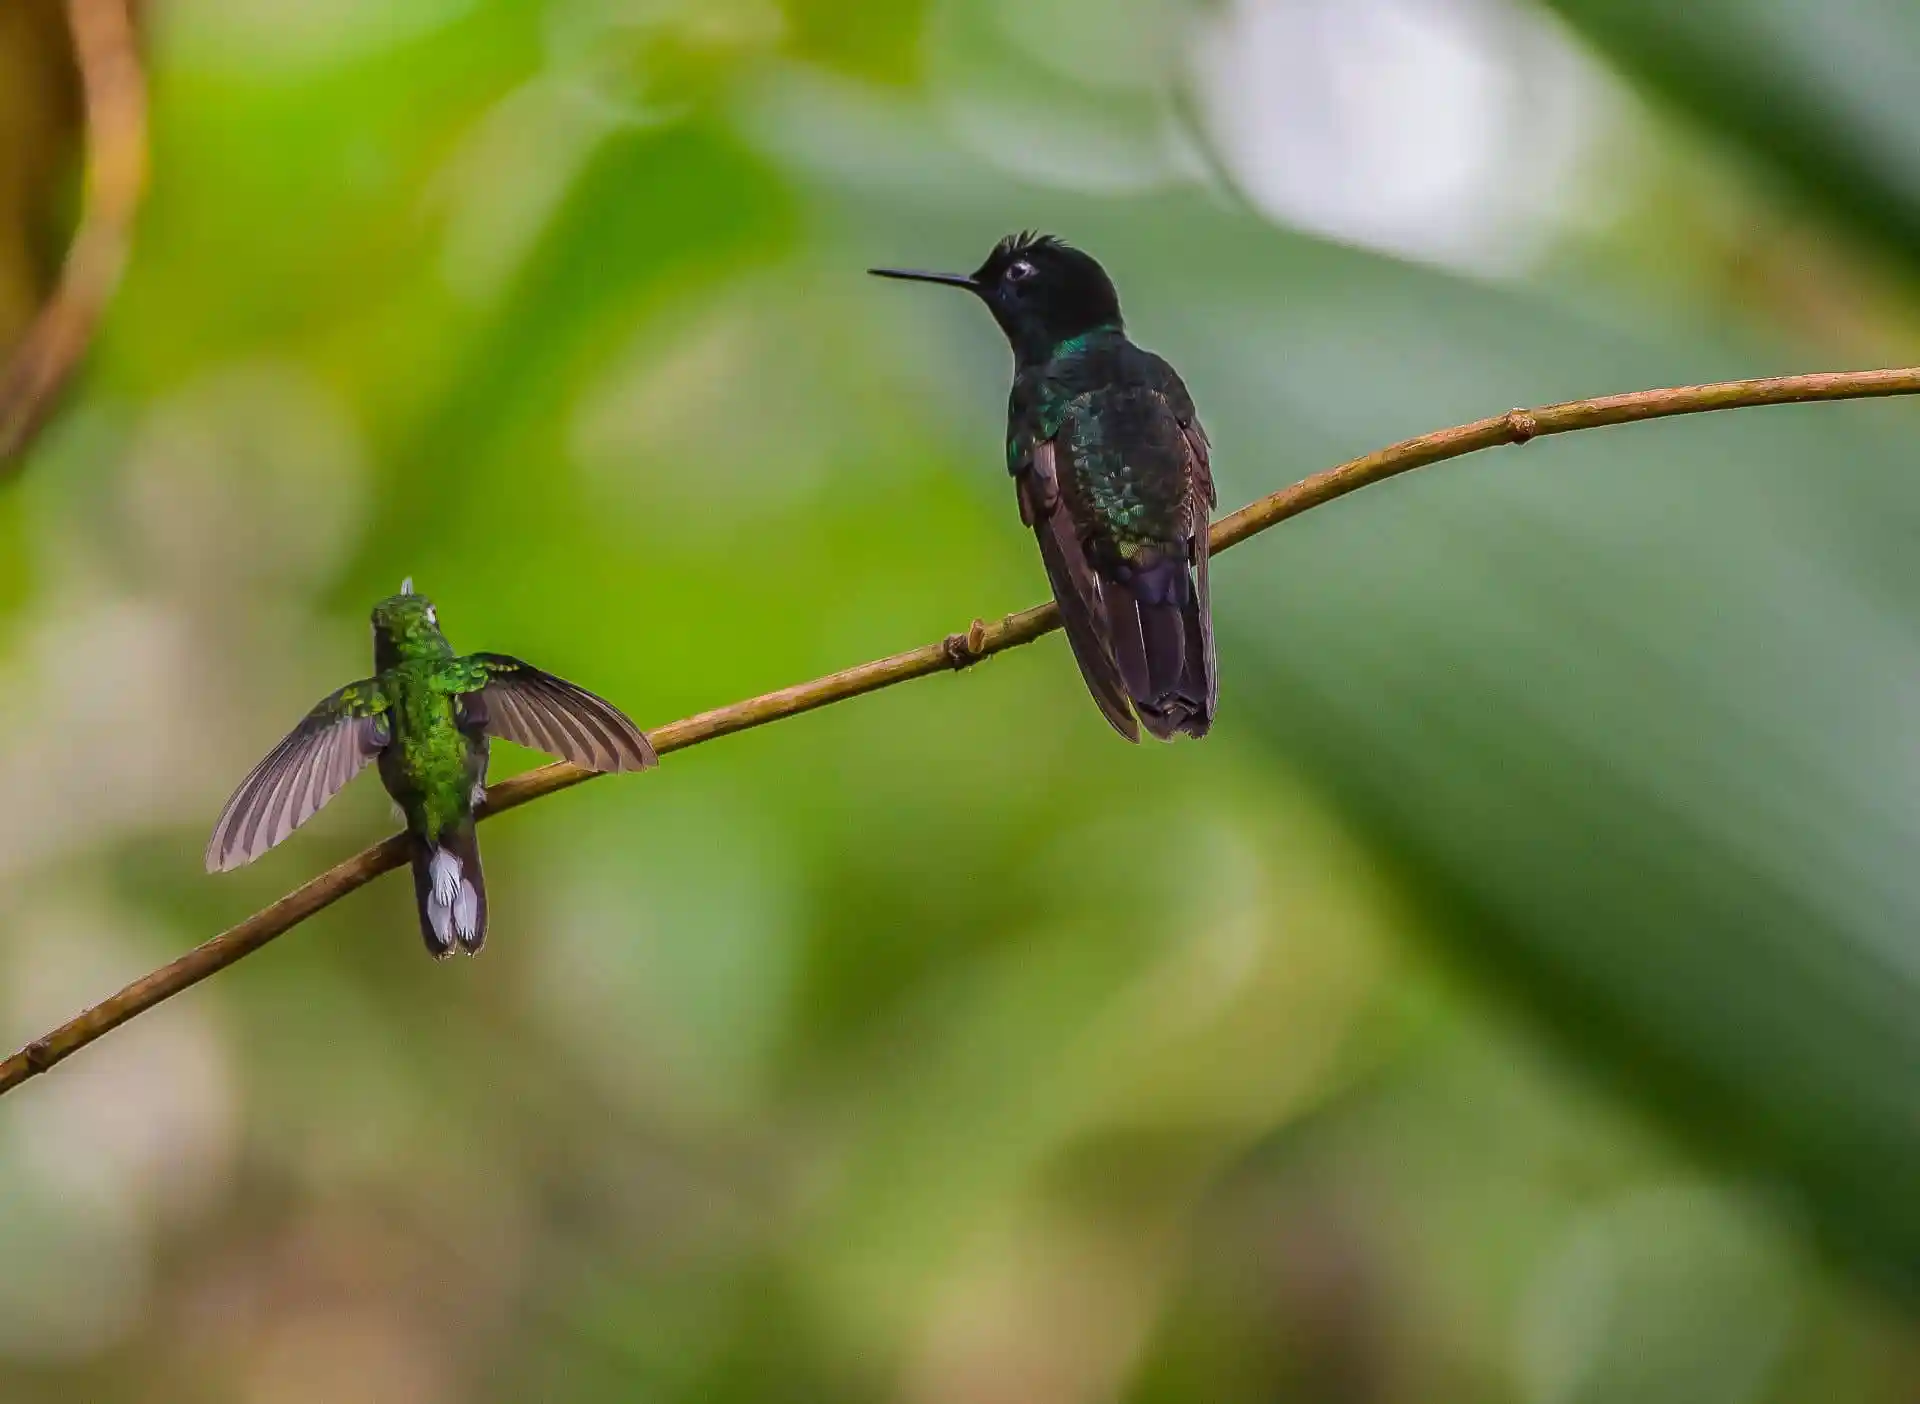 Two hummingbirds in the biodiverse Mashpi forest, Ecuador